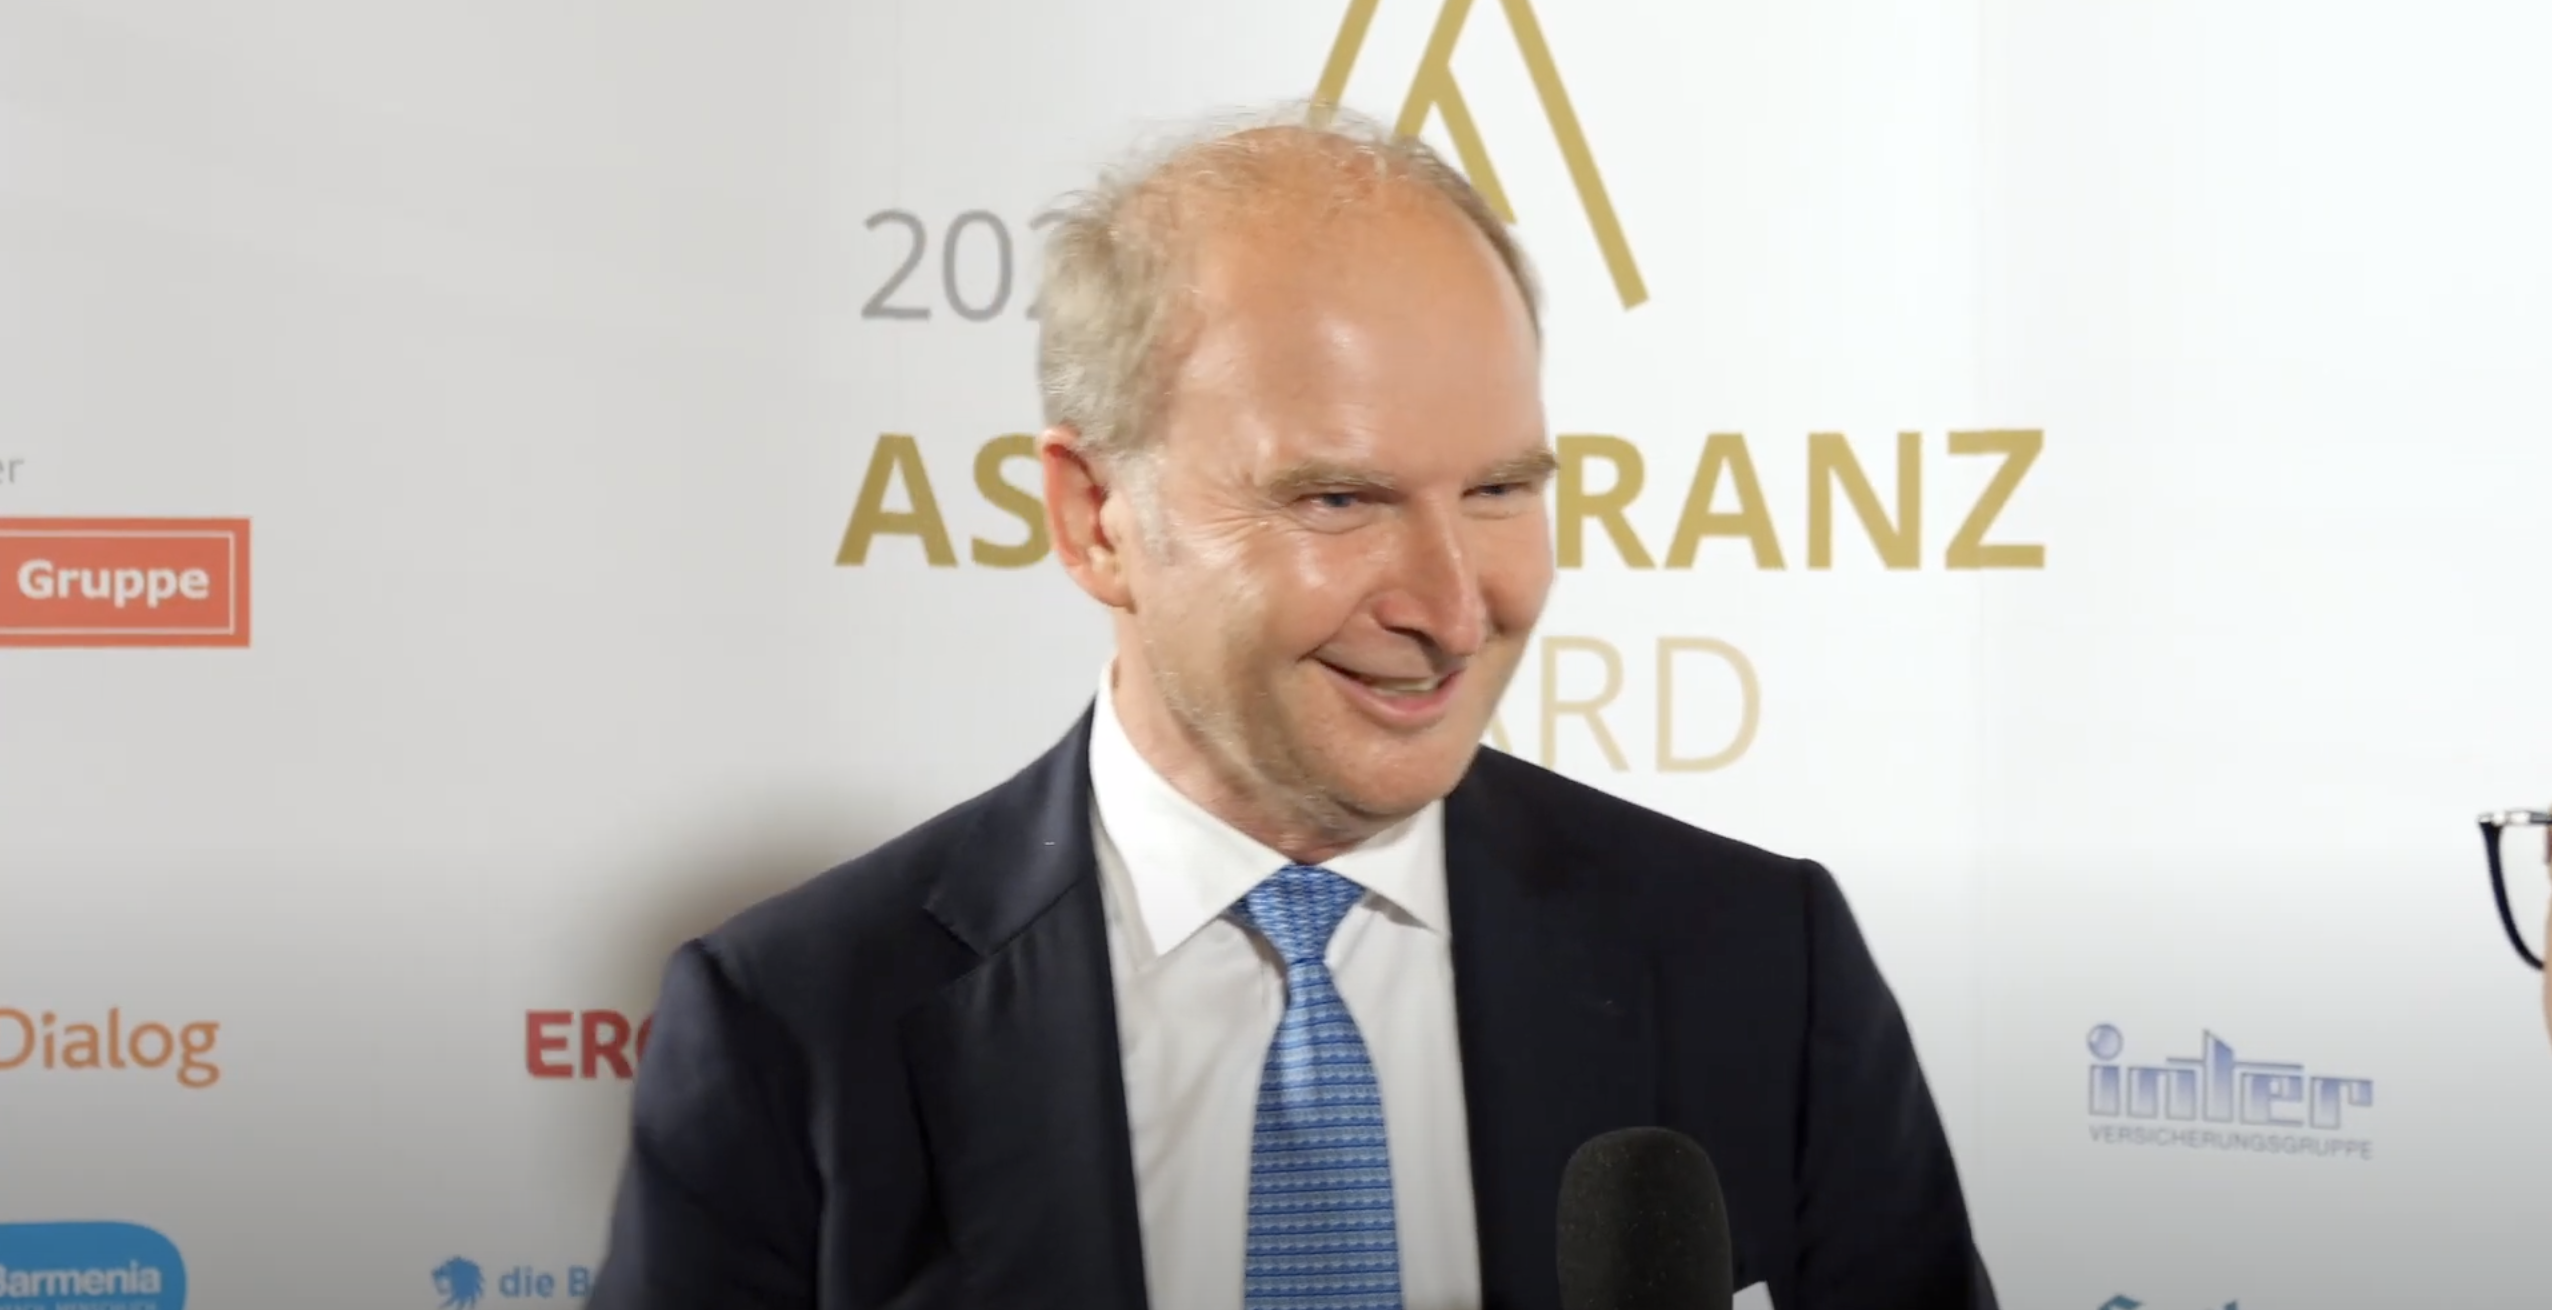 Assekuranz Award Olaf Engemann